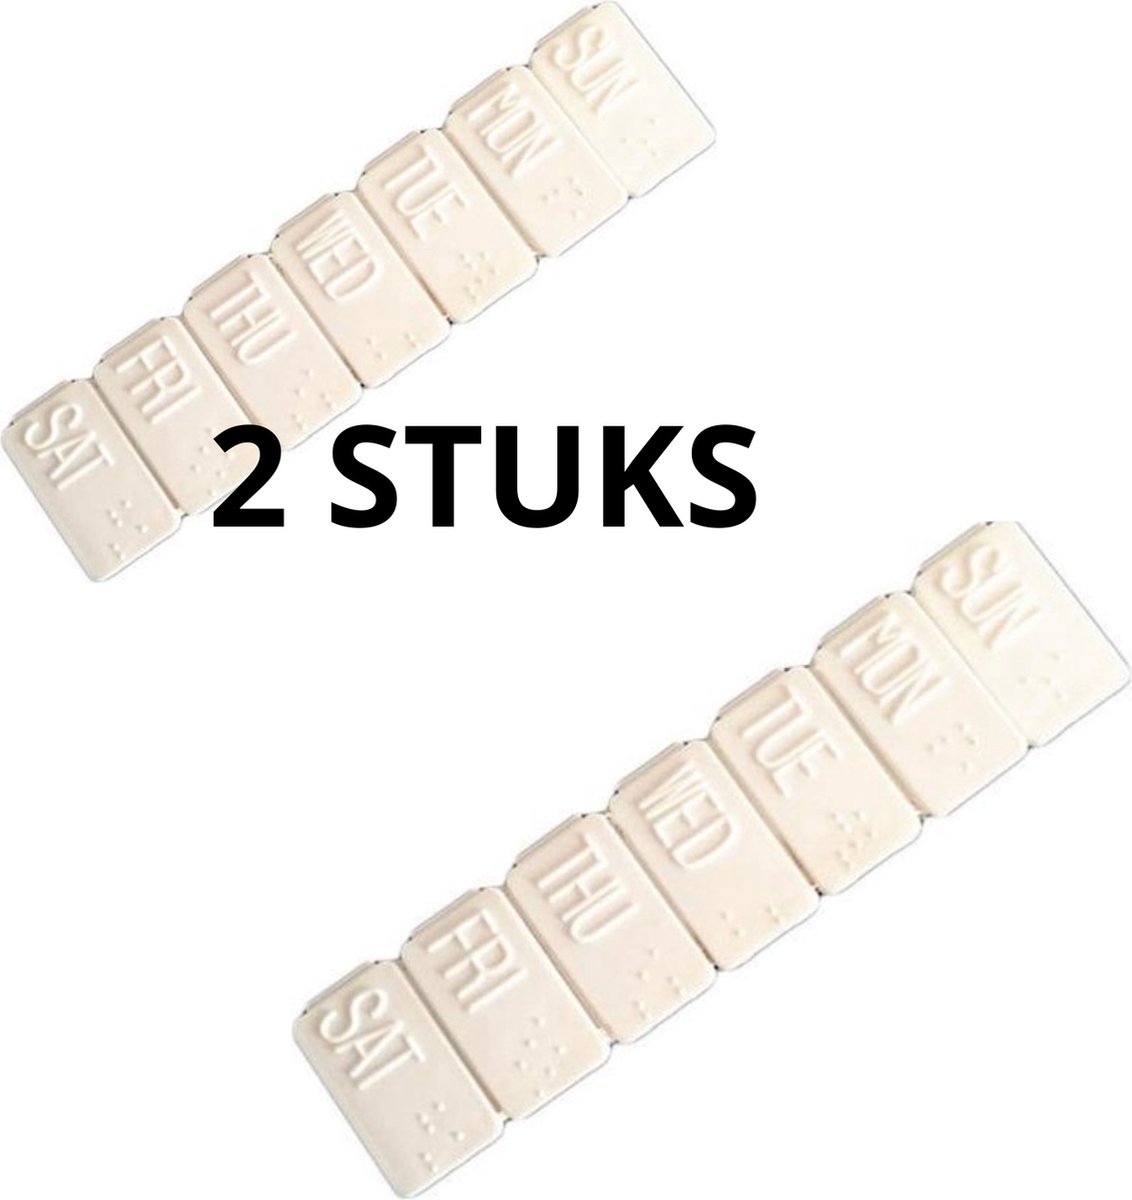 Pillendoos voor 7 dagen met dagindeling - 2 Stuks - Pillendoosje voor 1 week - Wit - Medicijndoosje met braille aanduiding - Medicijnbox met dagaanduiding